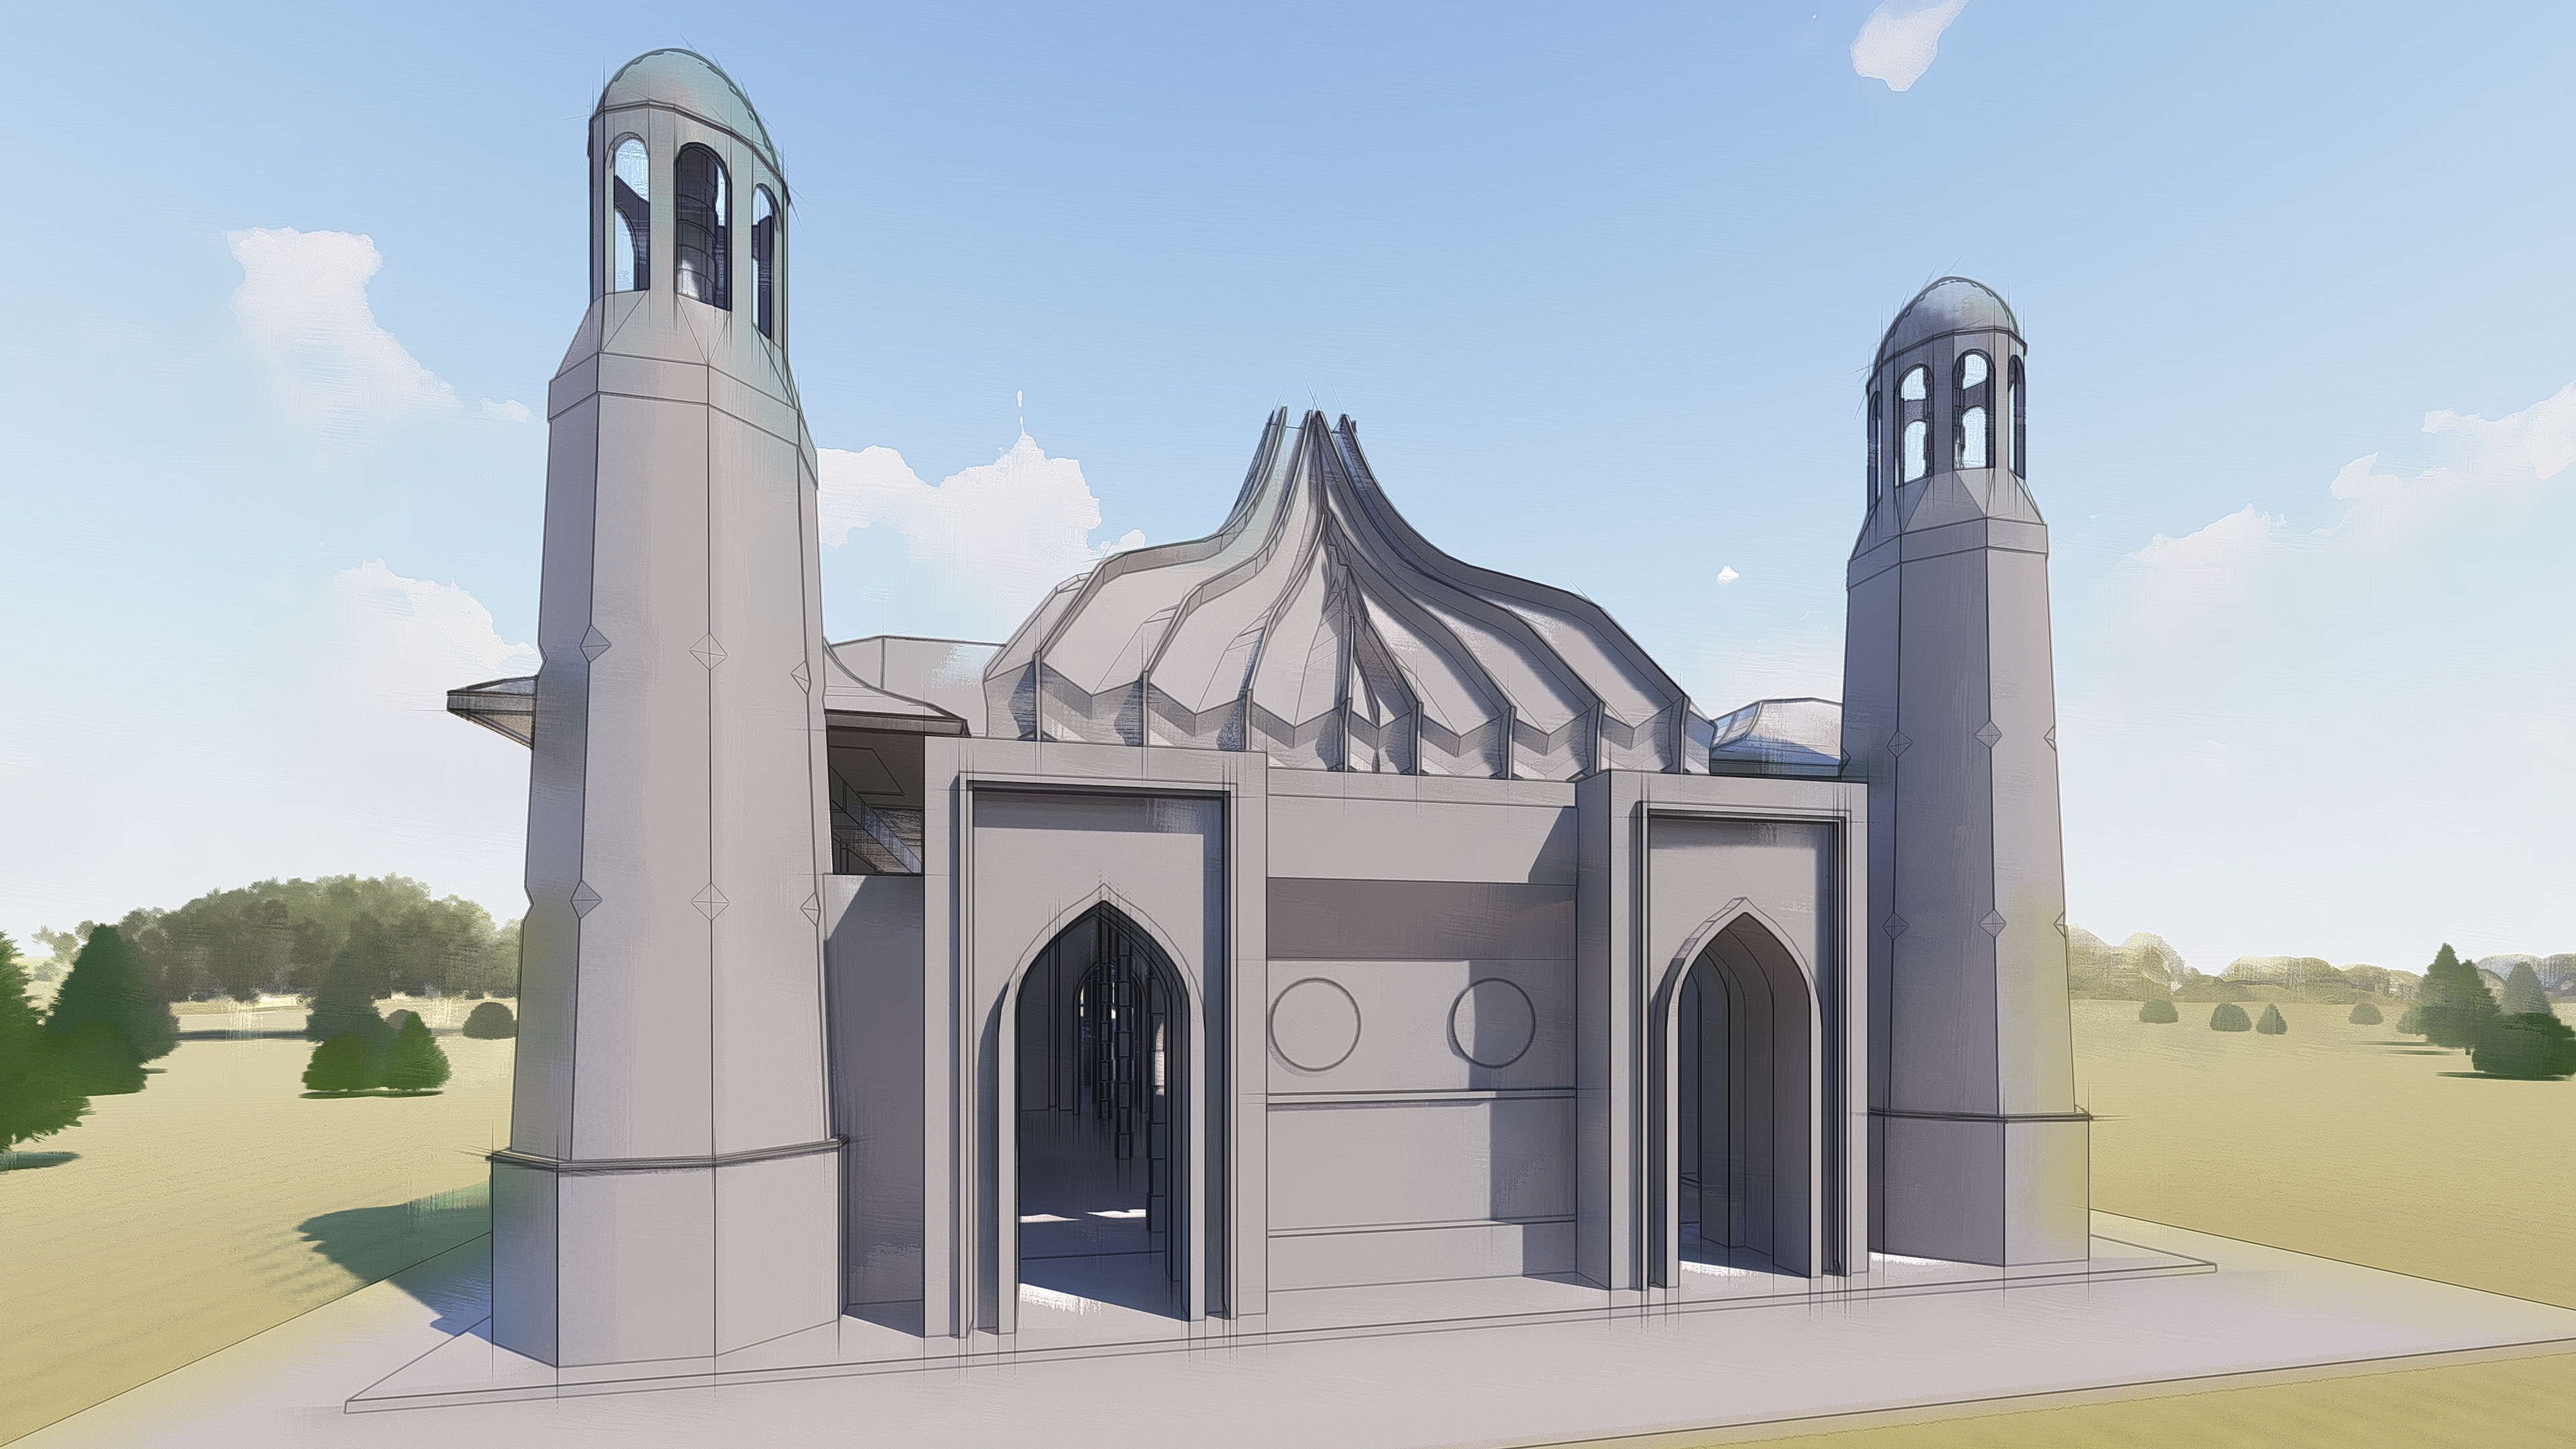 सभी धर्मों का मंदिर। संकल्पना १। Blender Other में प्रस्तुत छवि